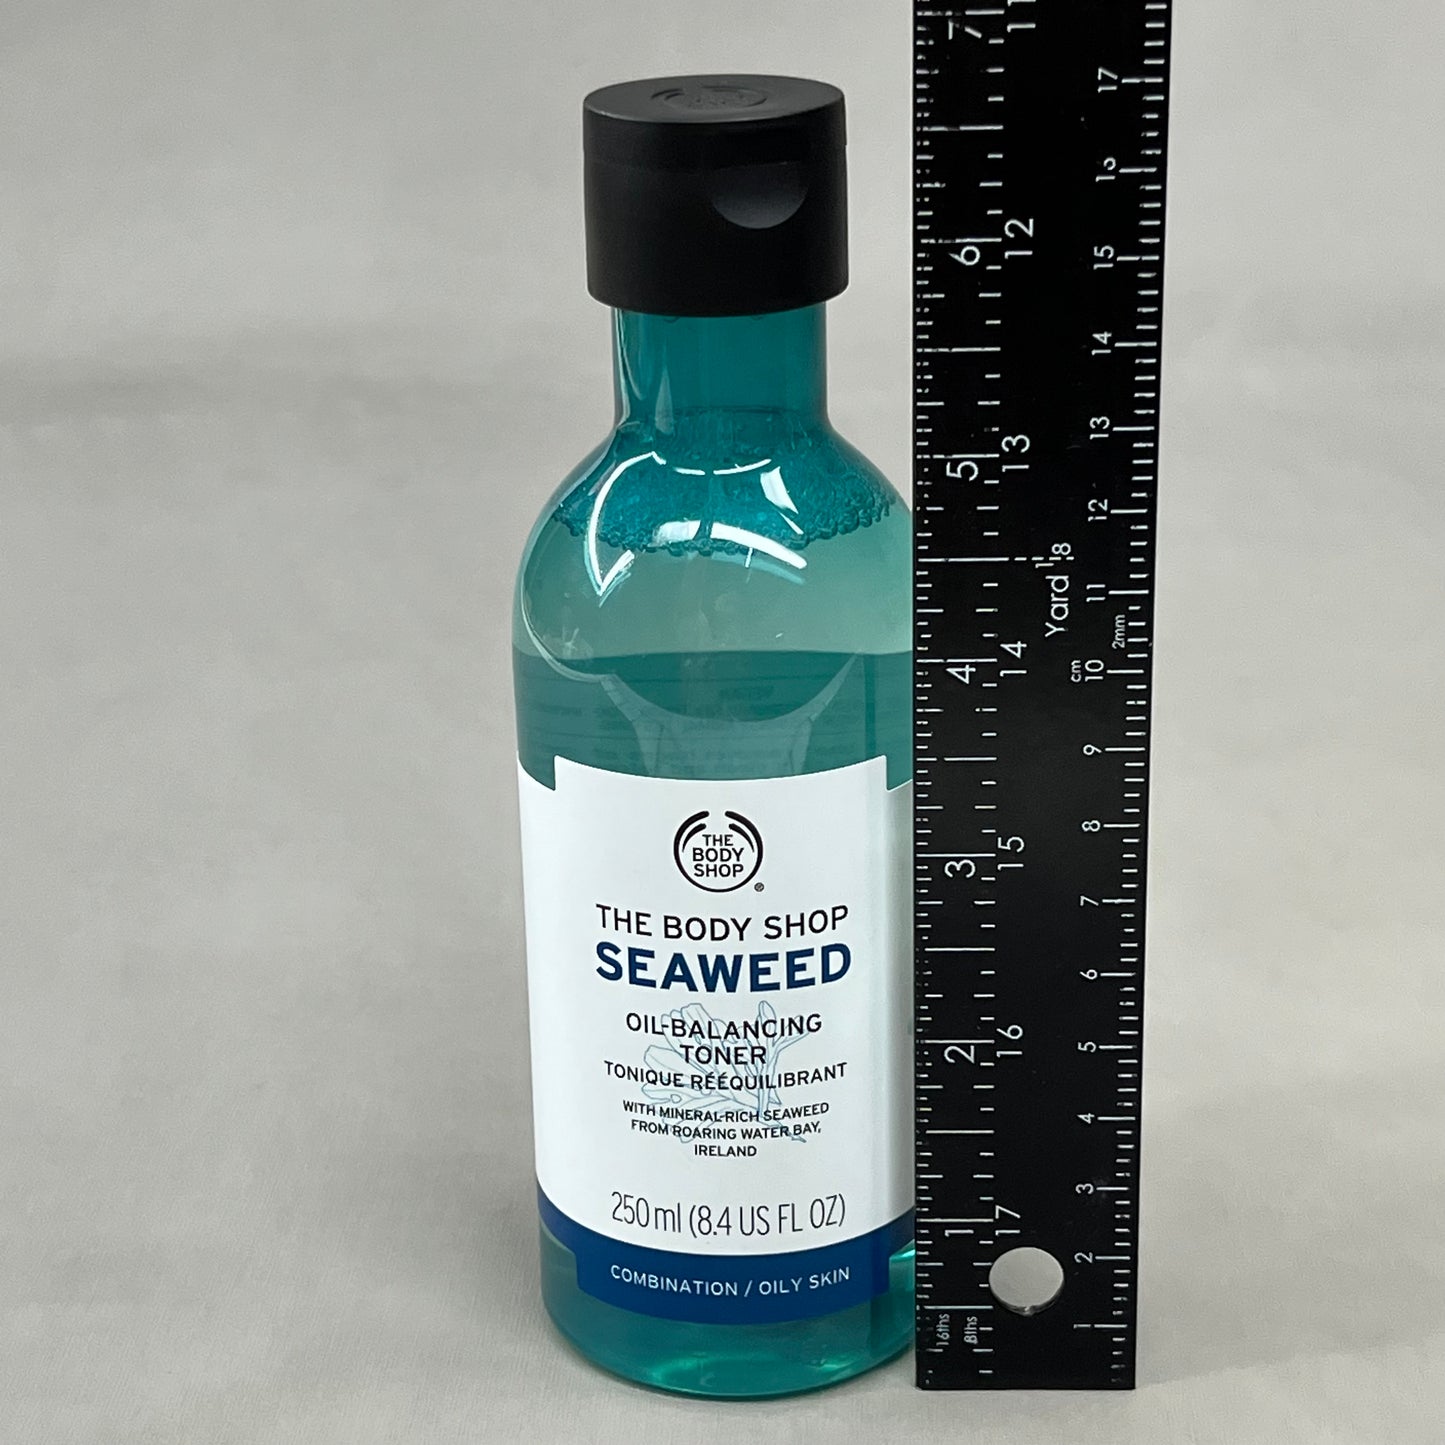 THE BODY SHOP Seaweed Oil Balancing Toner 8.4 fl oz XV901FR (New)